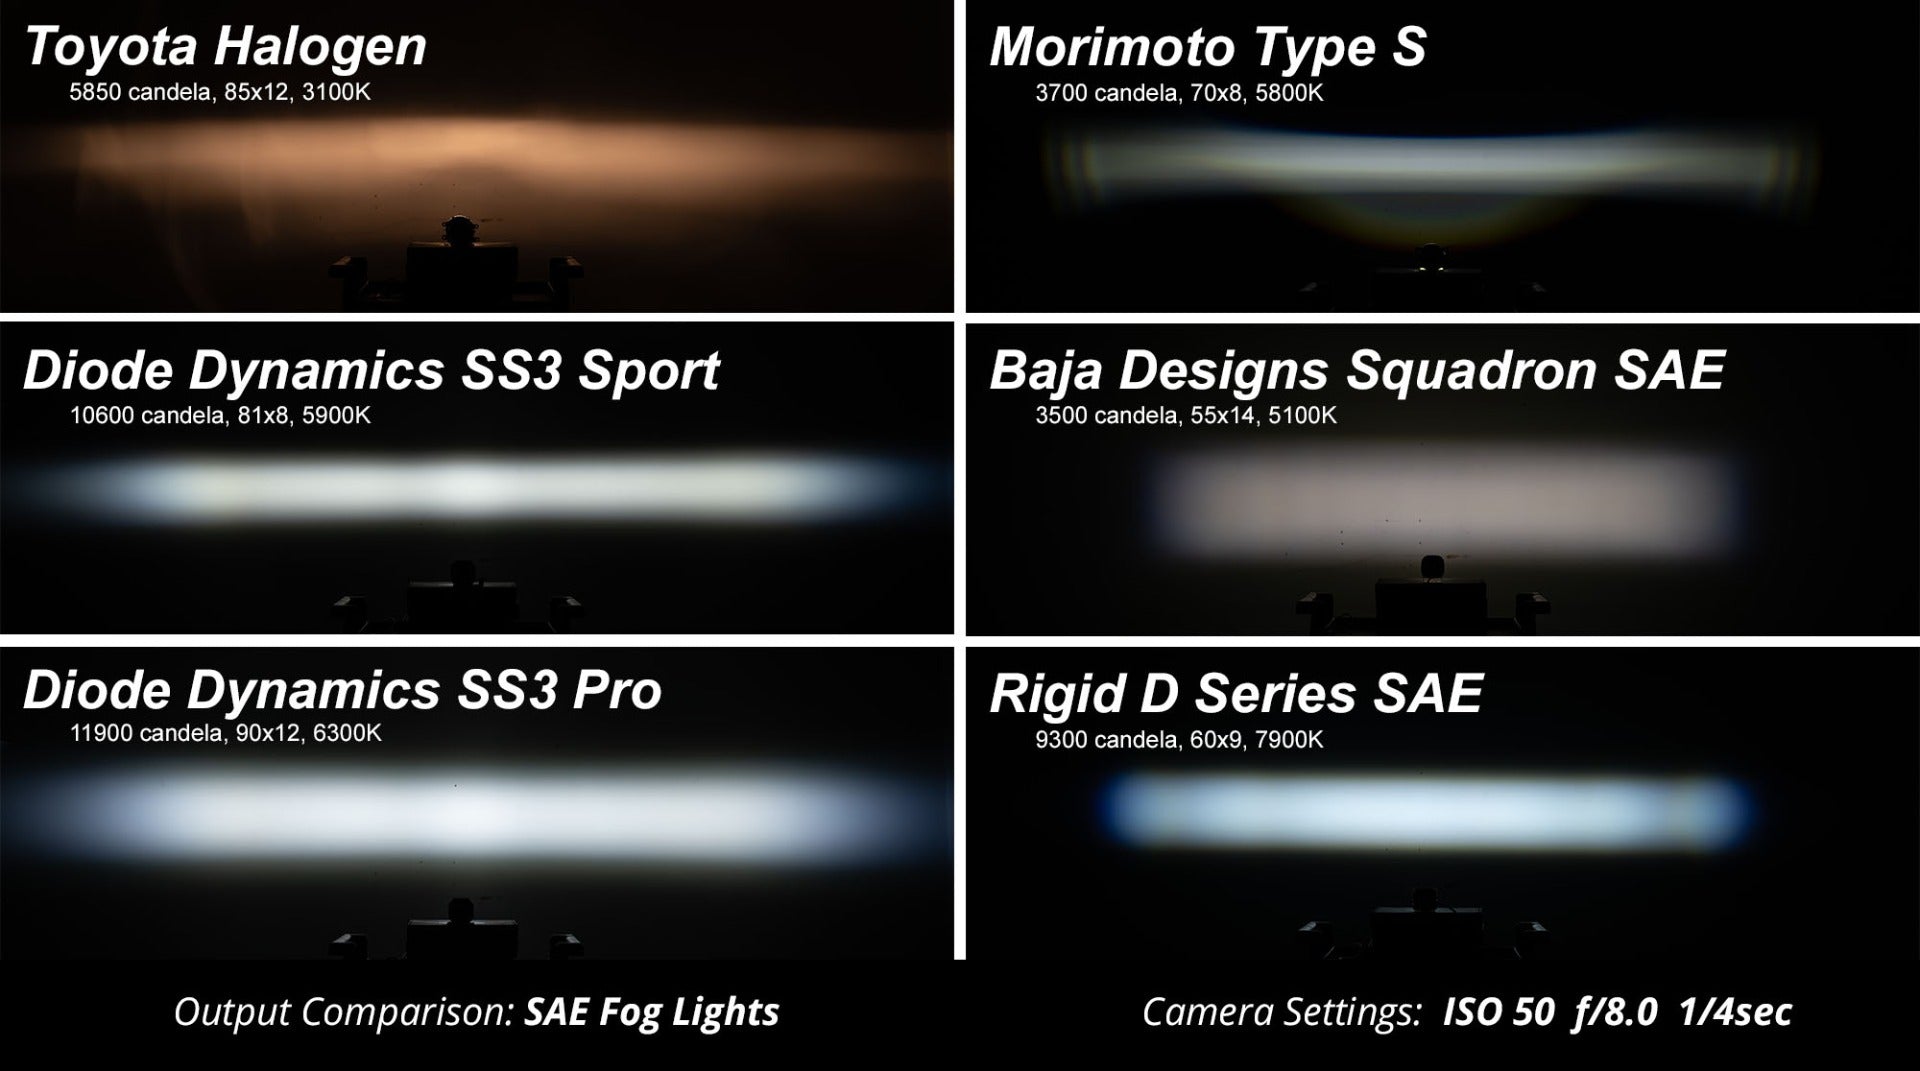 SS3 LED Fog Light Kit for 2013-2016 Scion FR-S White SAE Fog Pro Diode Dynamics